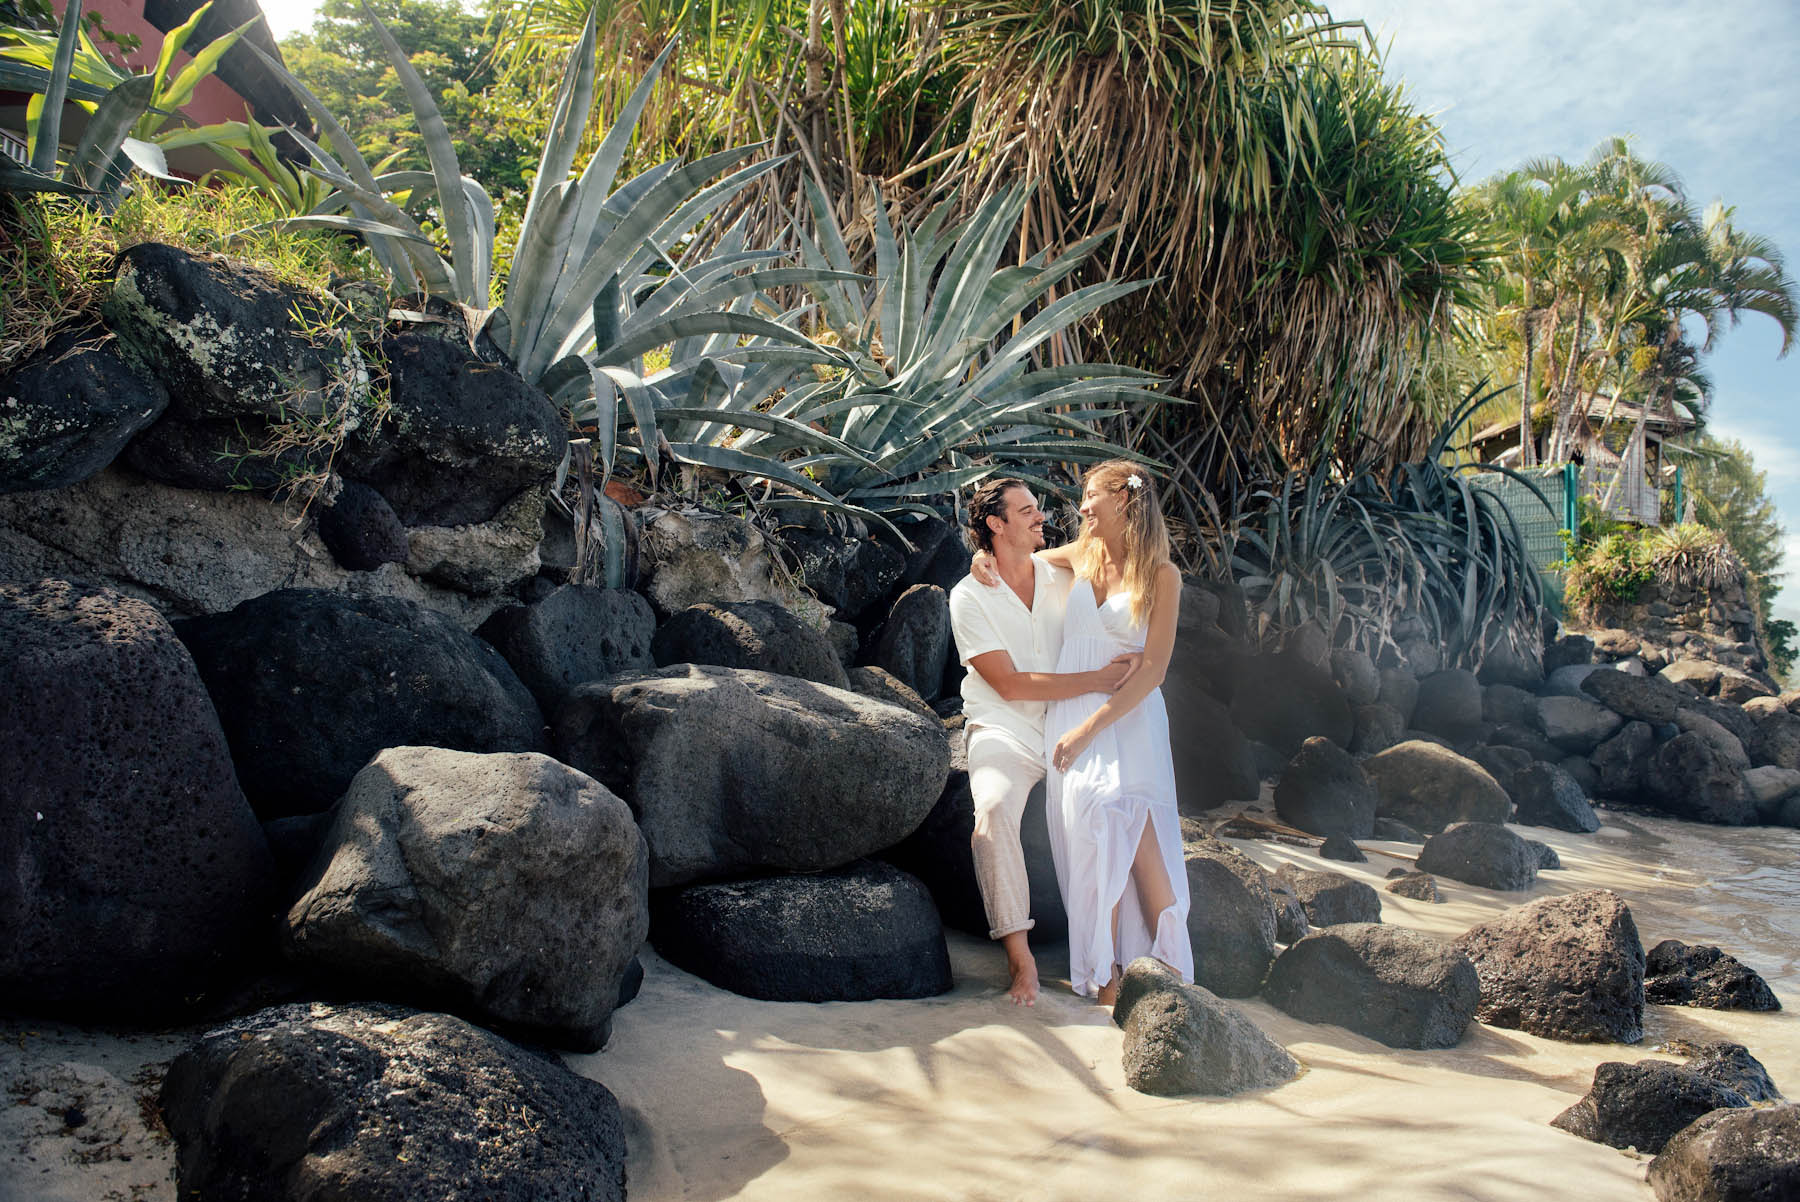 Tahiti Beach Honeymoon Photography